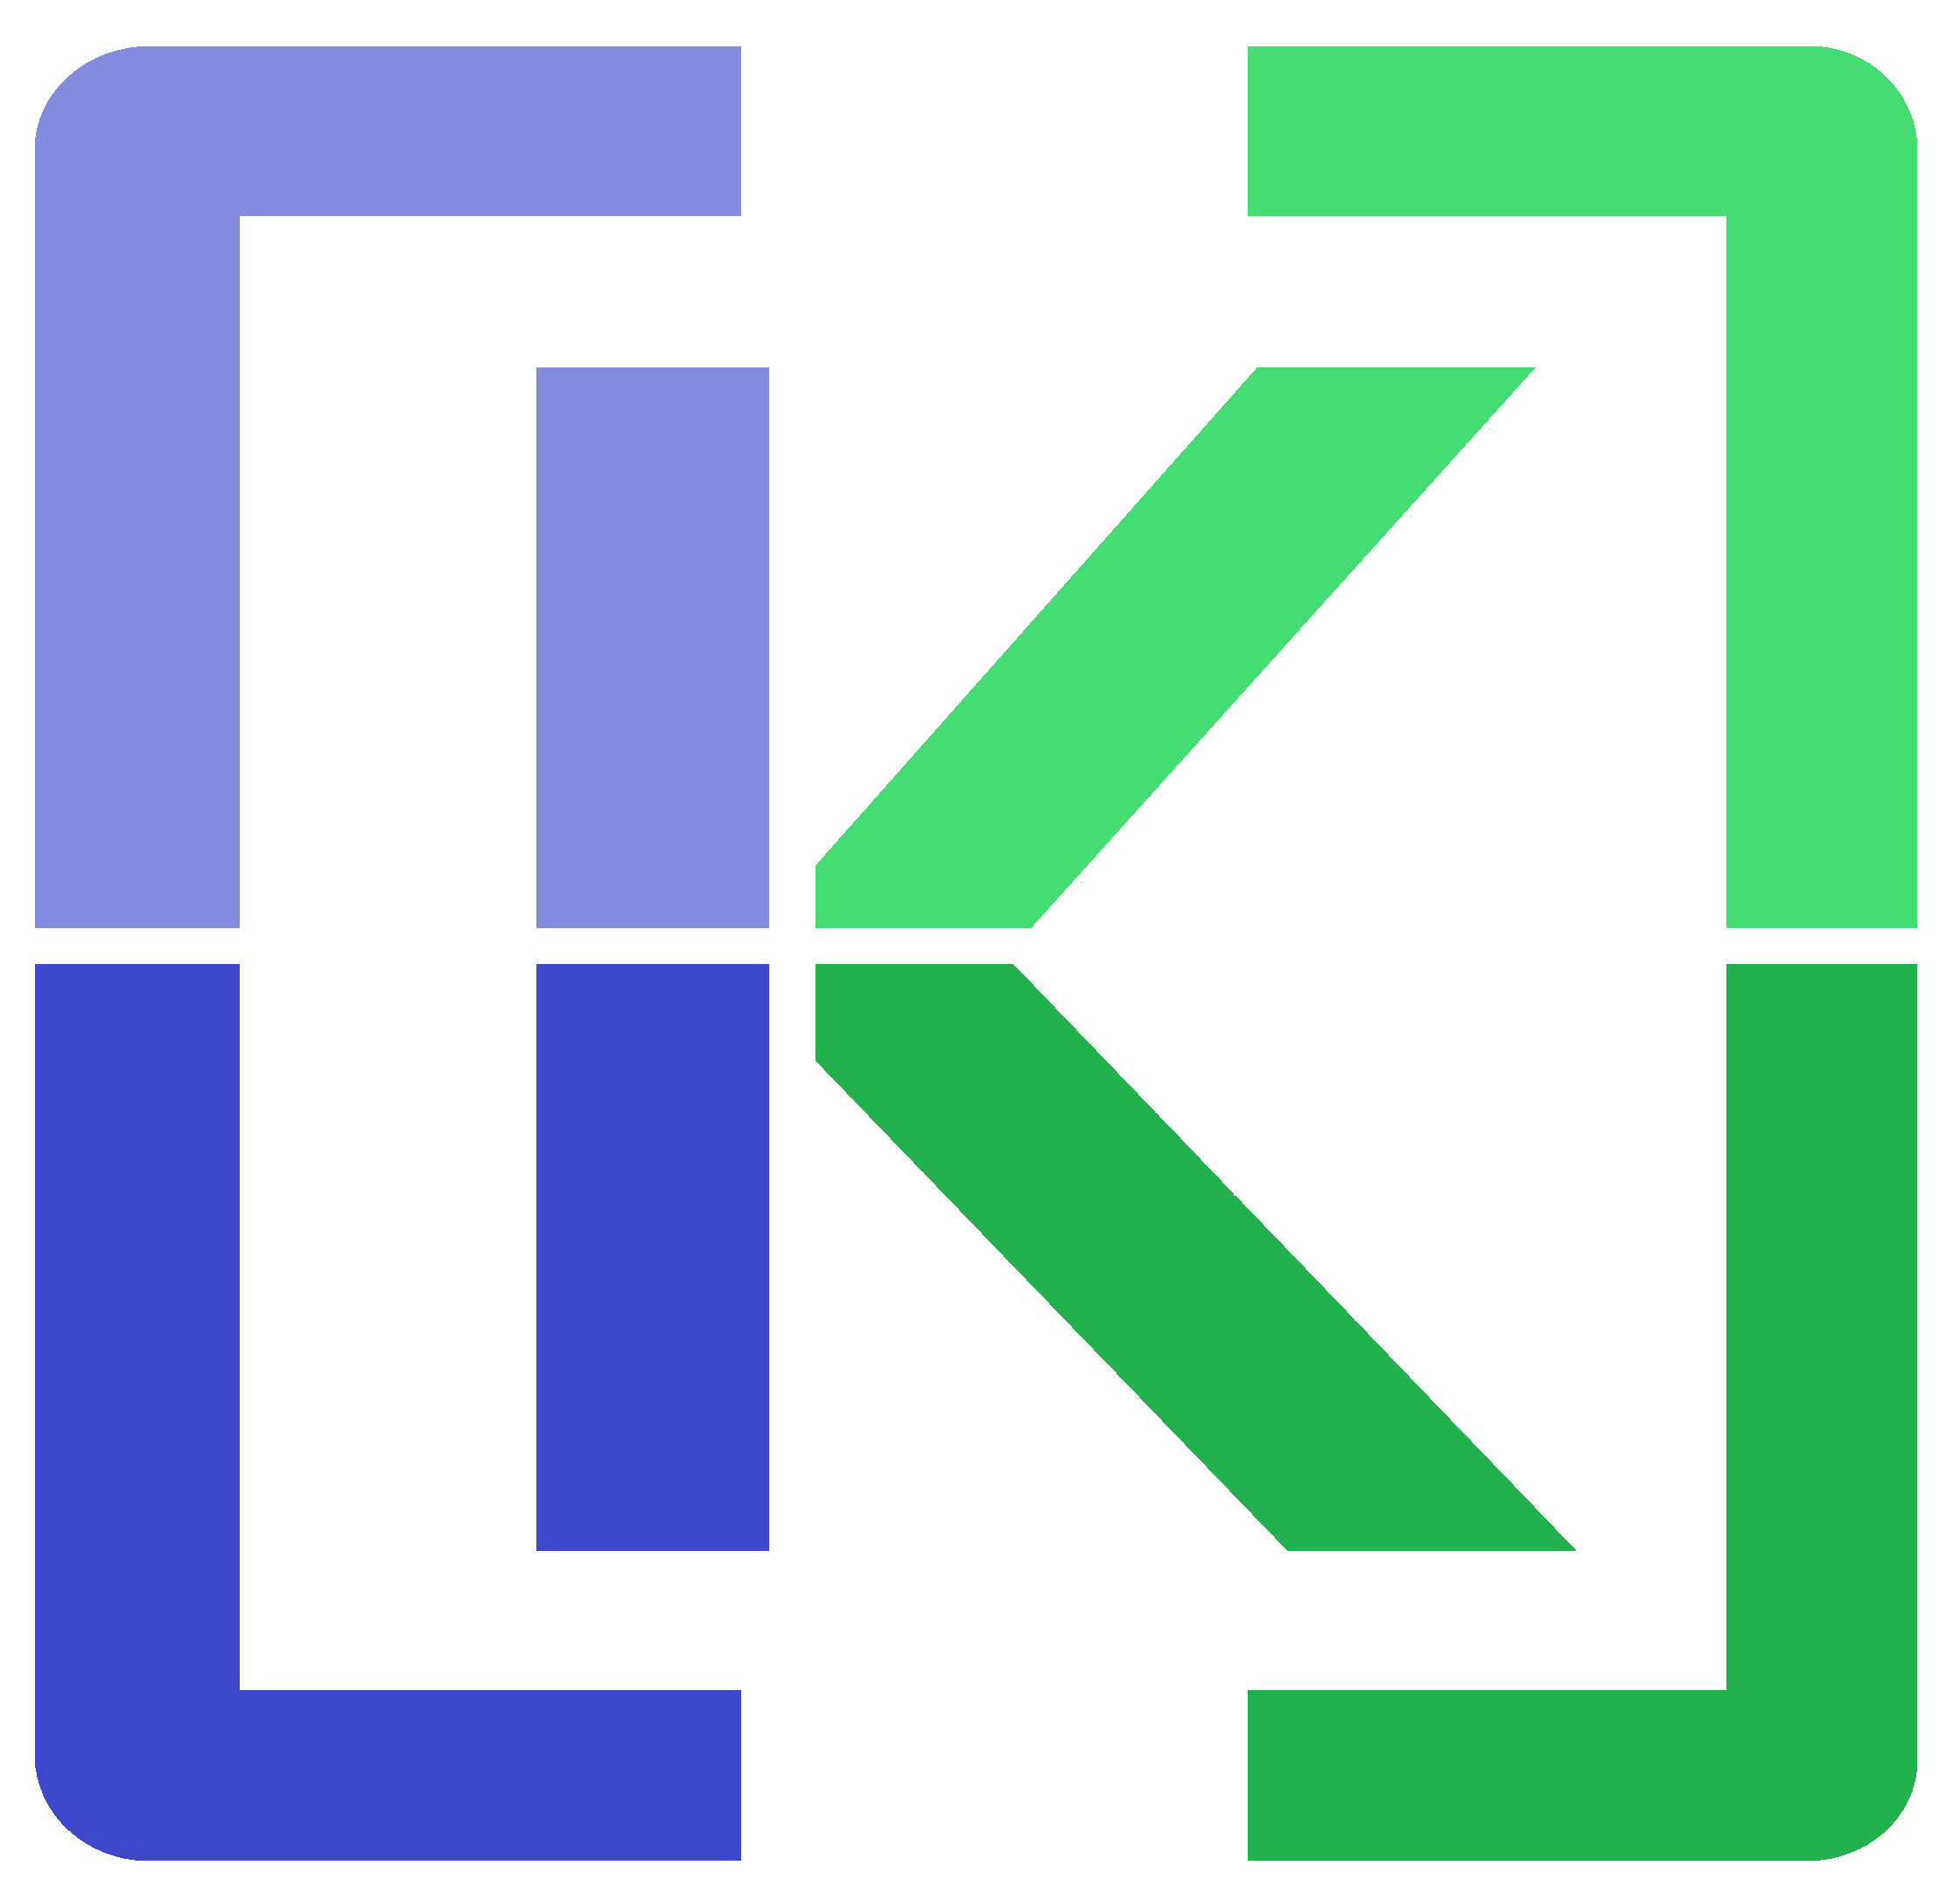 Kerb Logo